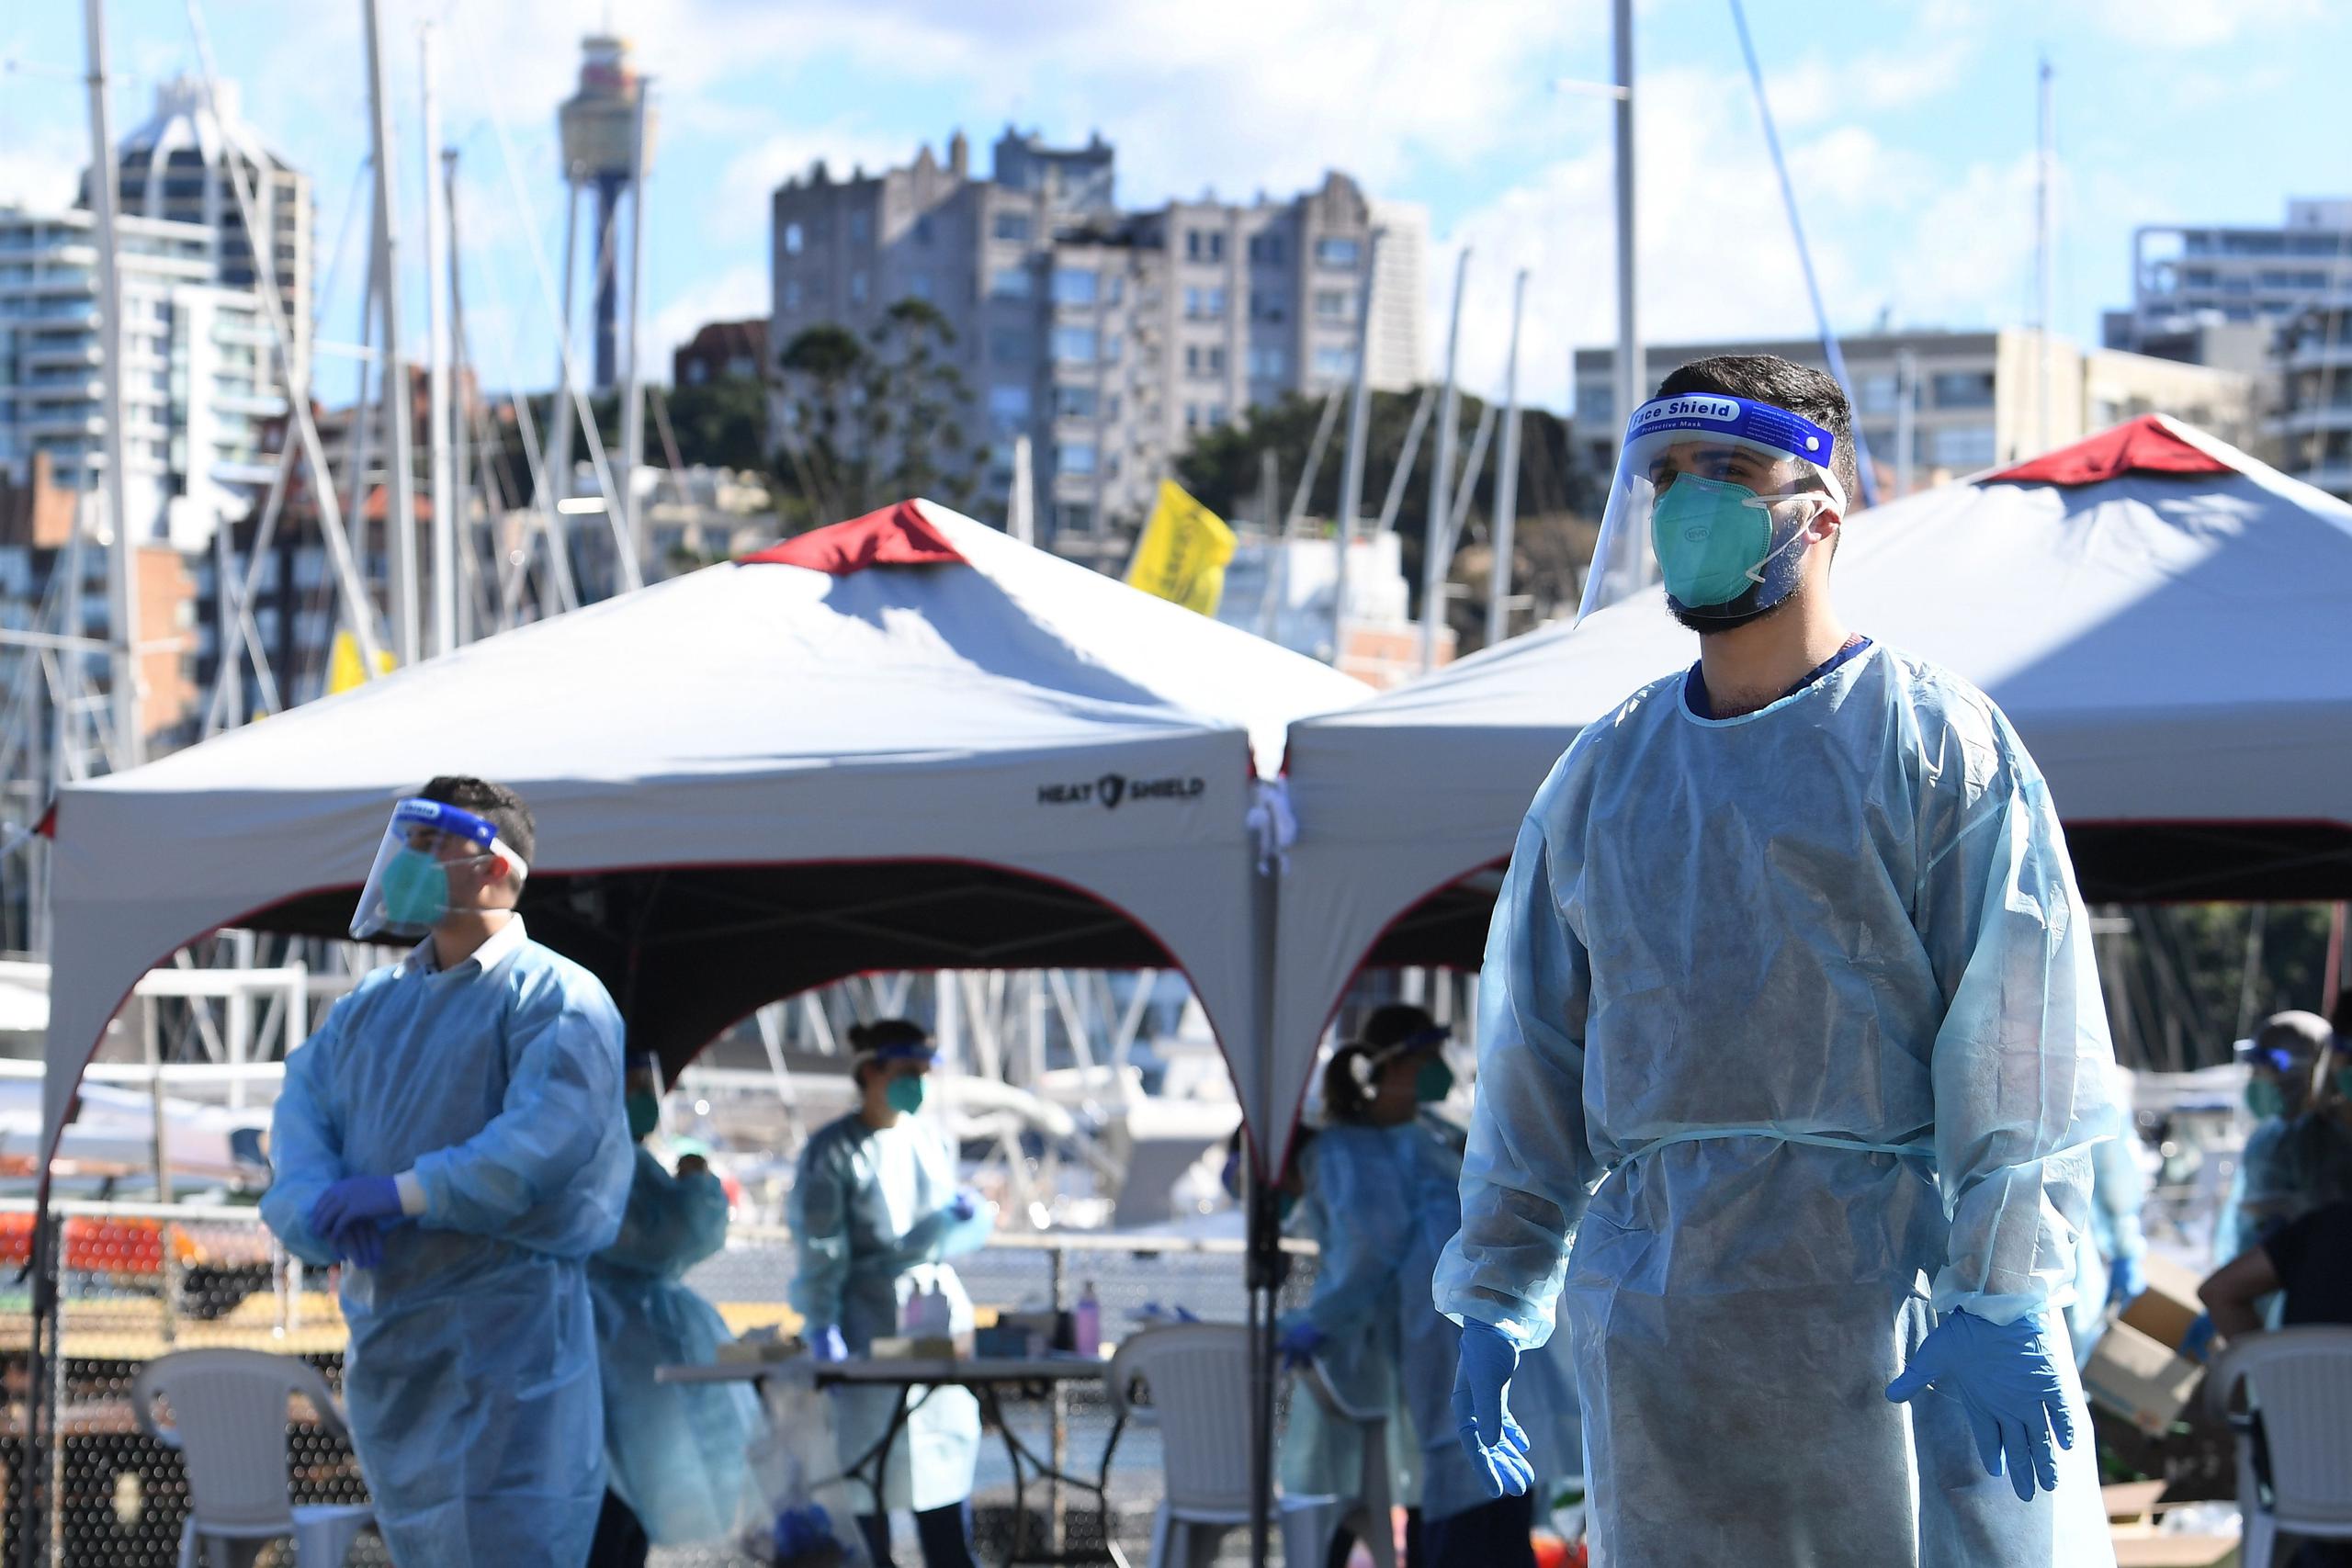 Australia acumula más de 28,340 casos de COVID-19 desde el inicio de la pandemia, incluyendo 909 fallecidos.